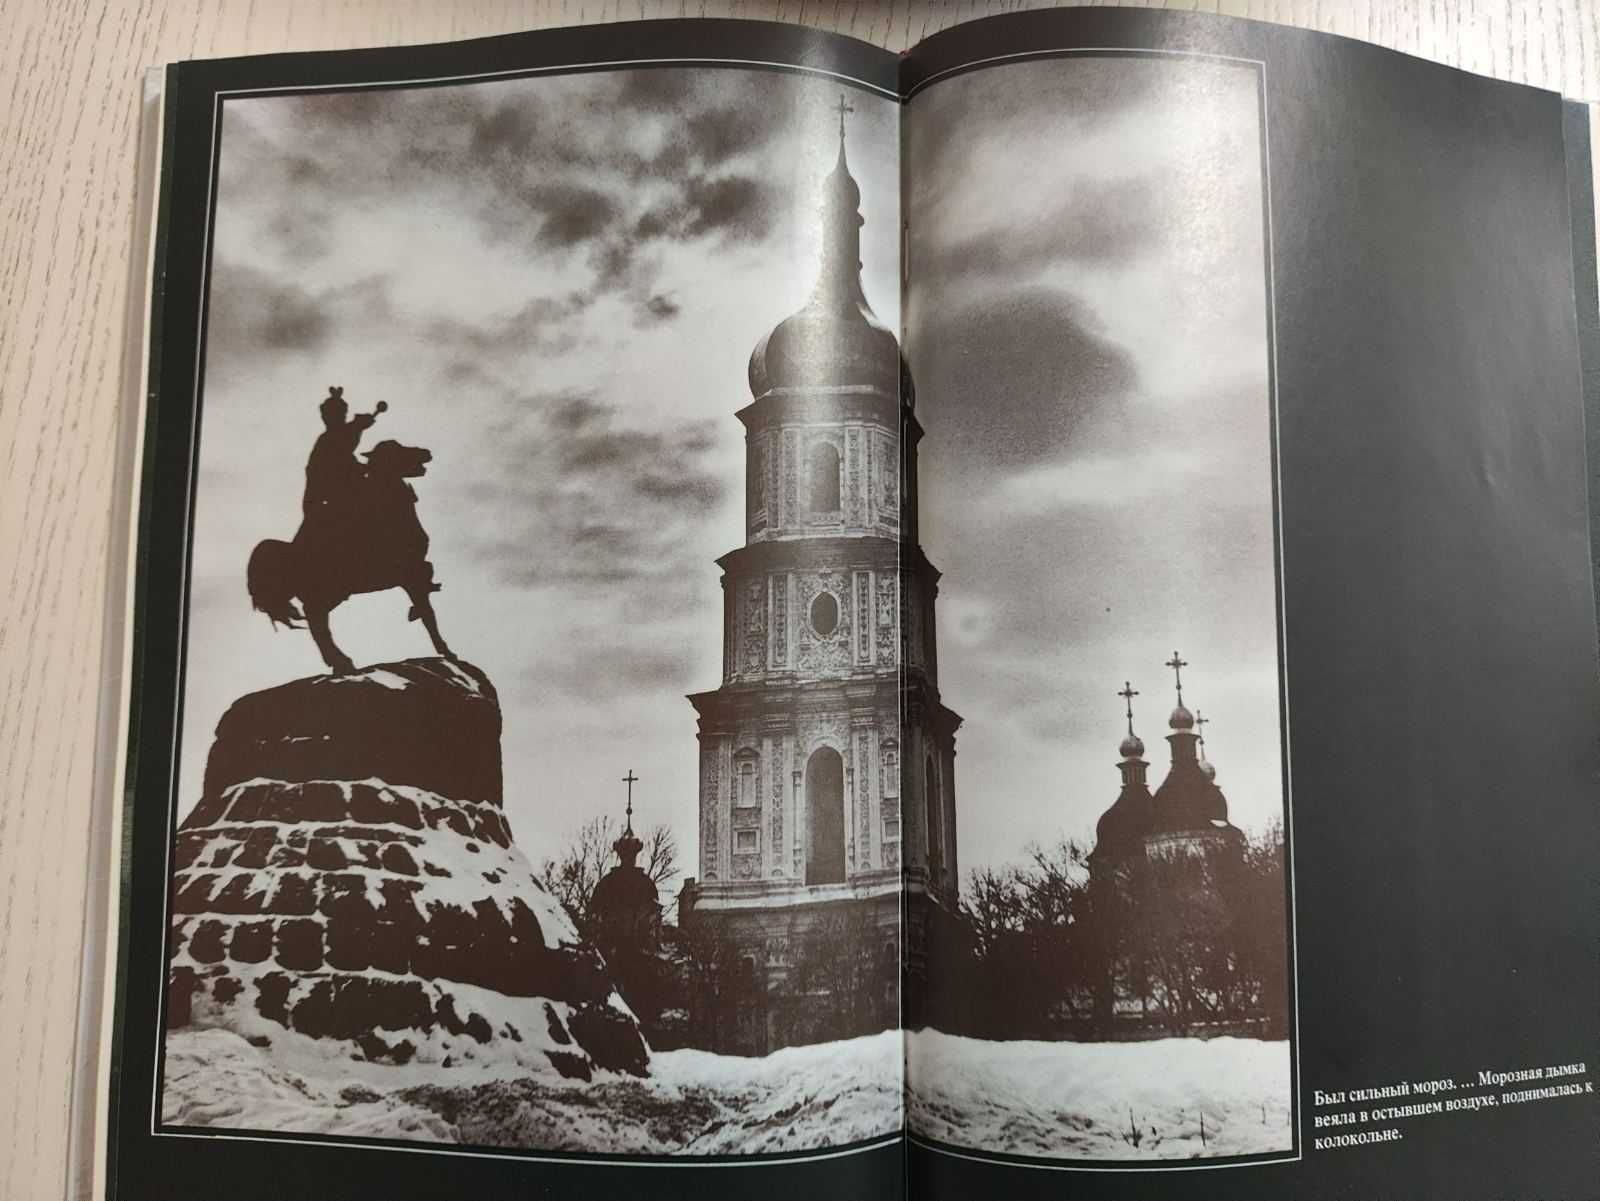 Книга КИЕВ МИХАИЛА БУЛГАКОВА + план Киев 1913 года